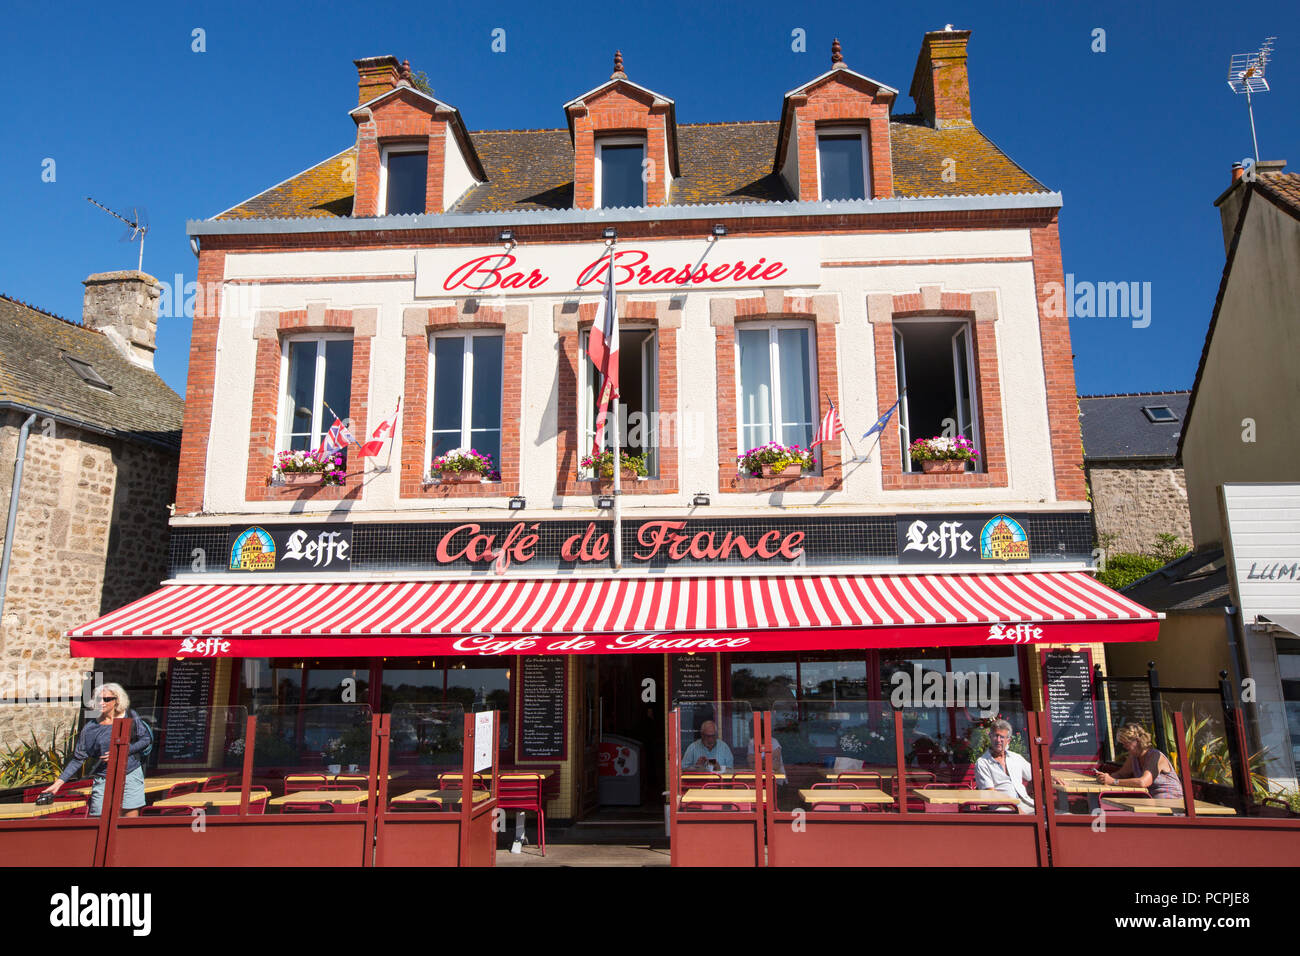 Eine Bar/Brasserie in Grandcamp-maisy, Normandie, Frankreich. Stockfoto